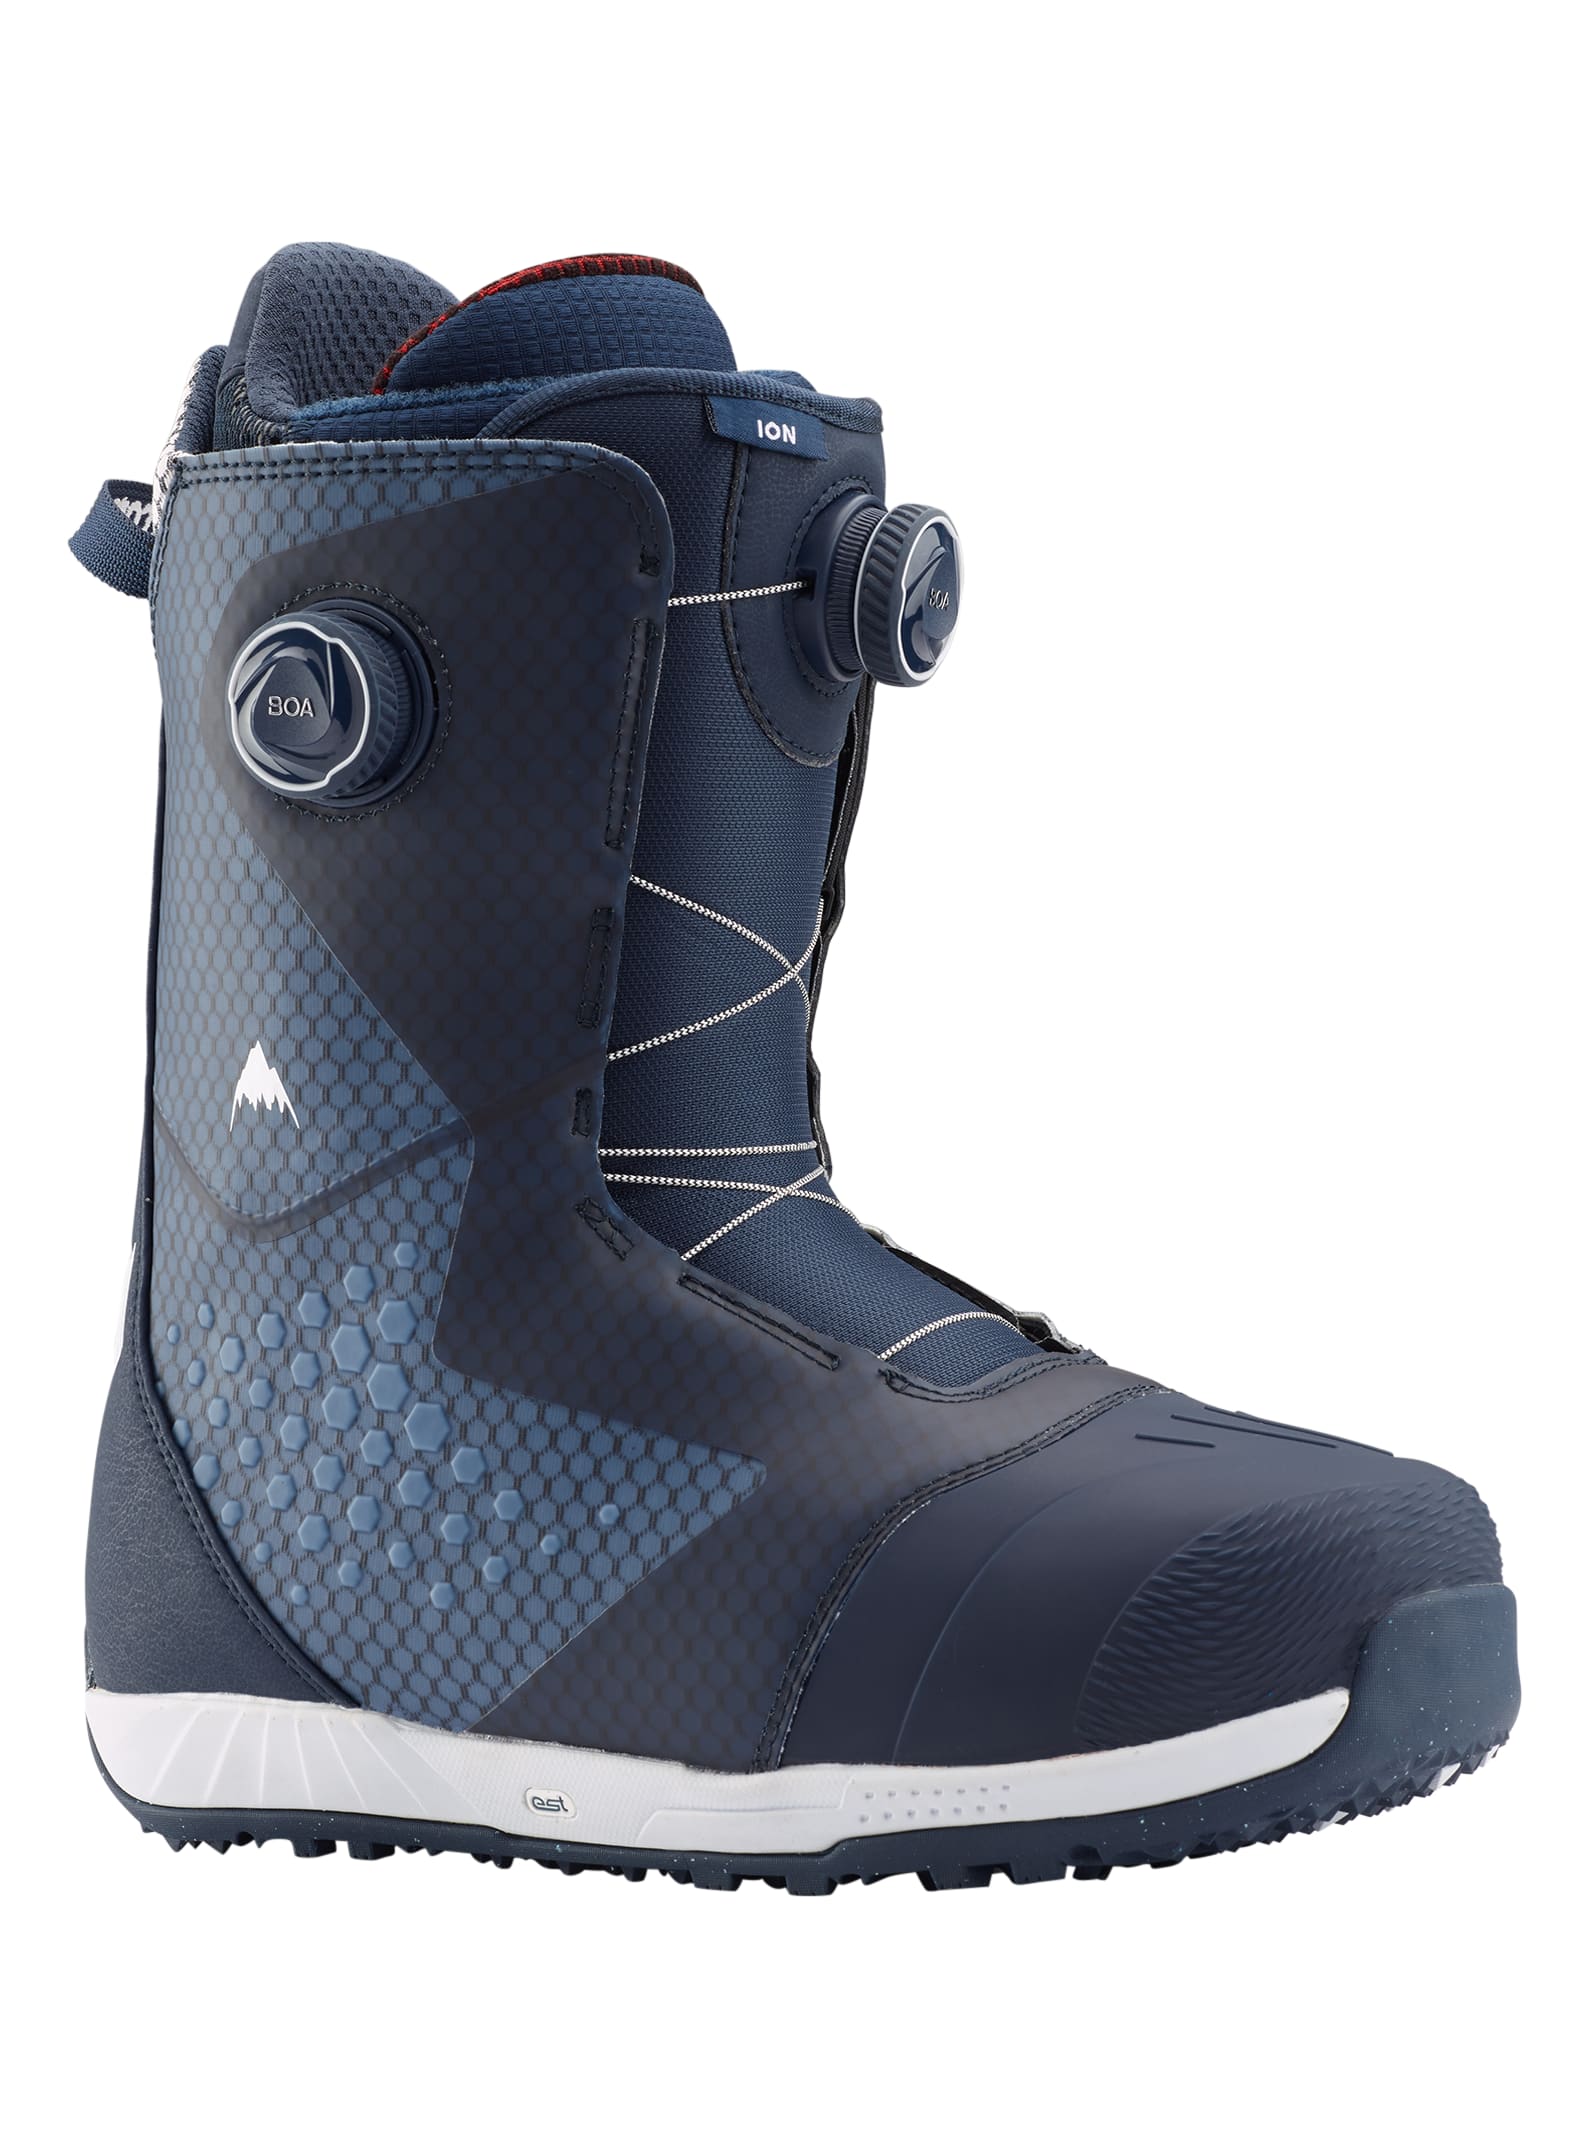 Men's Burton Ion Boa® Snowboard Boot